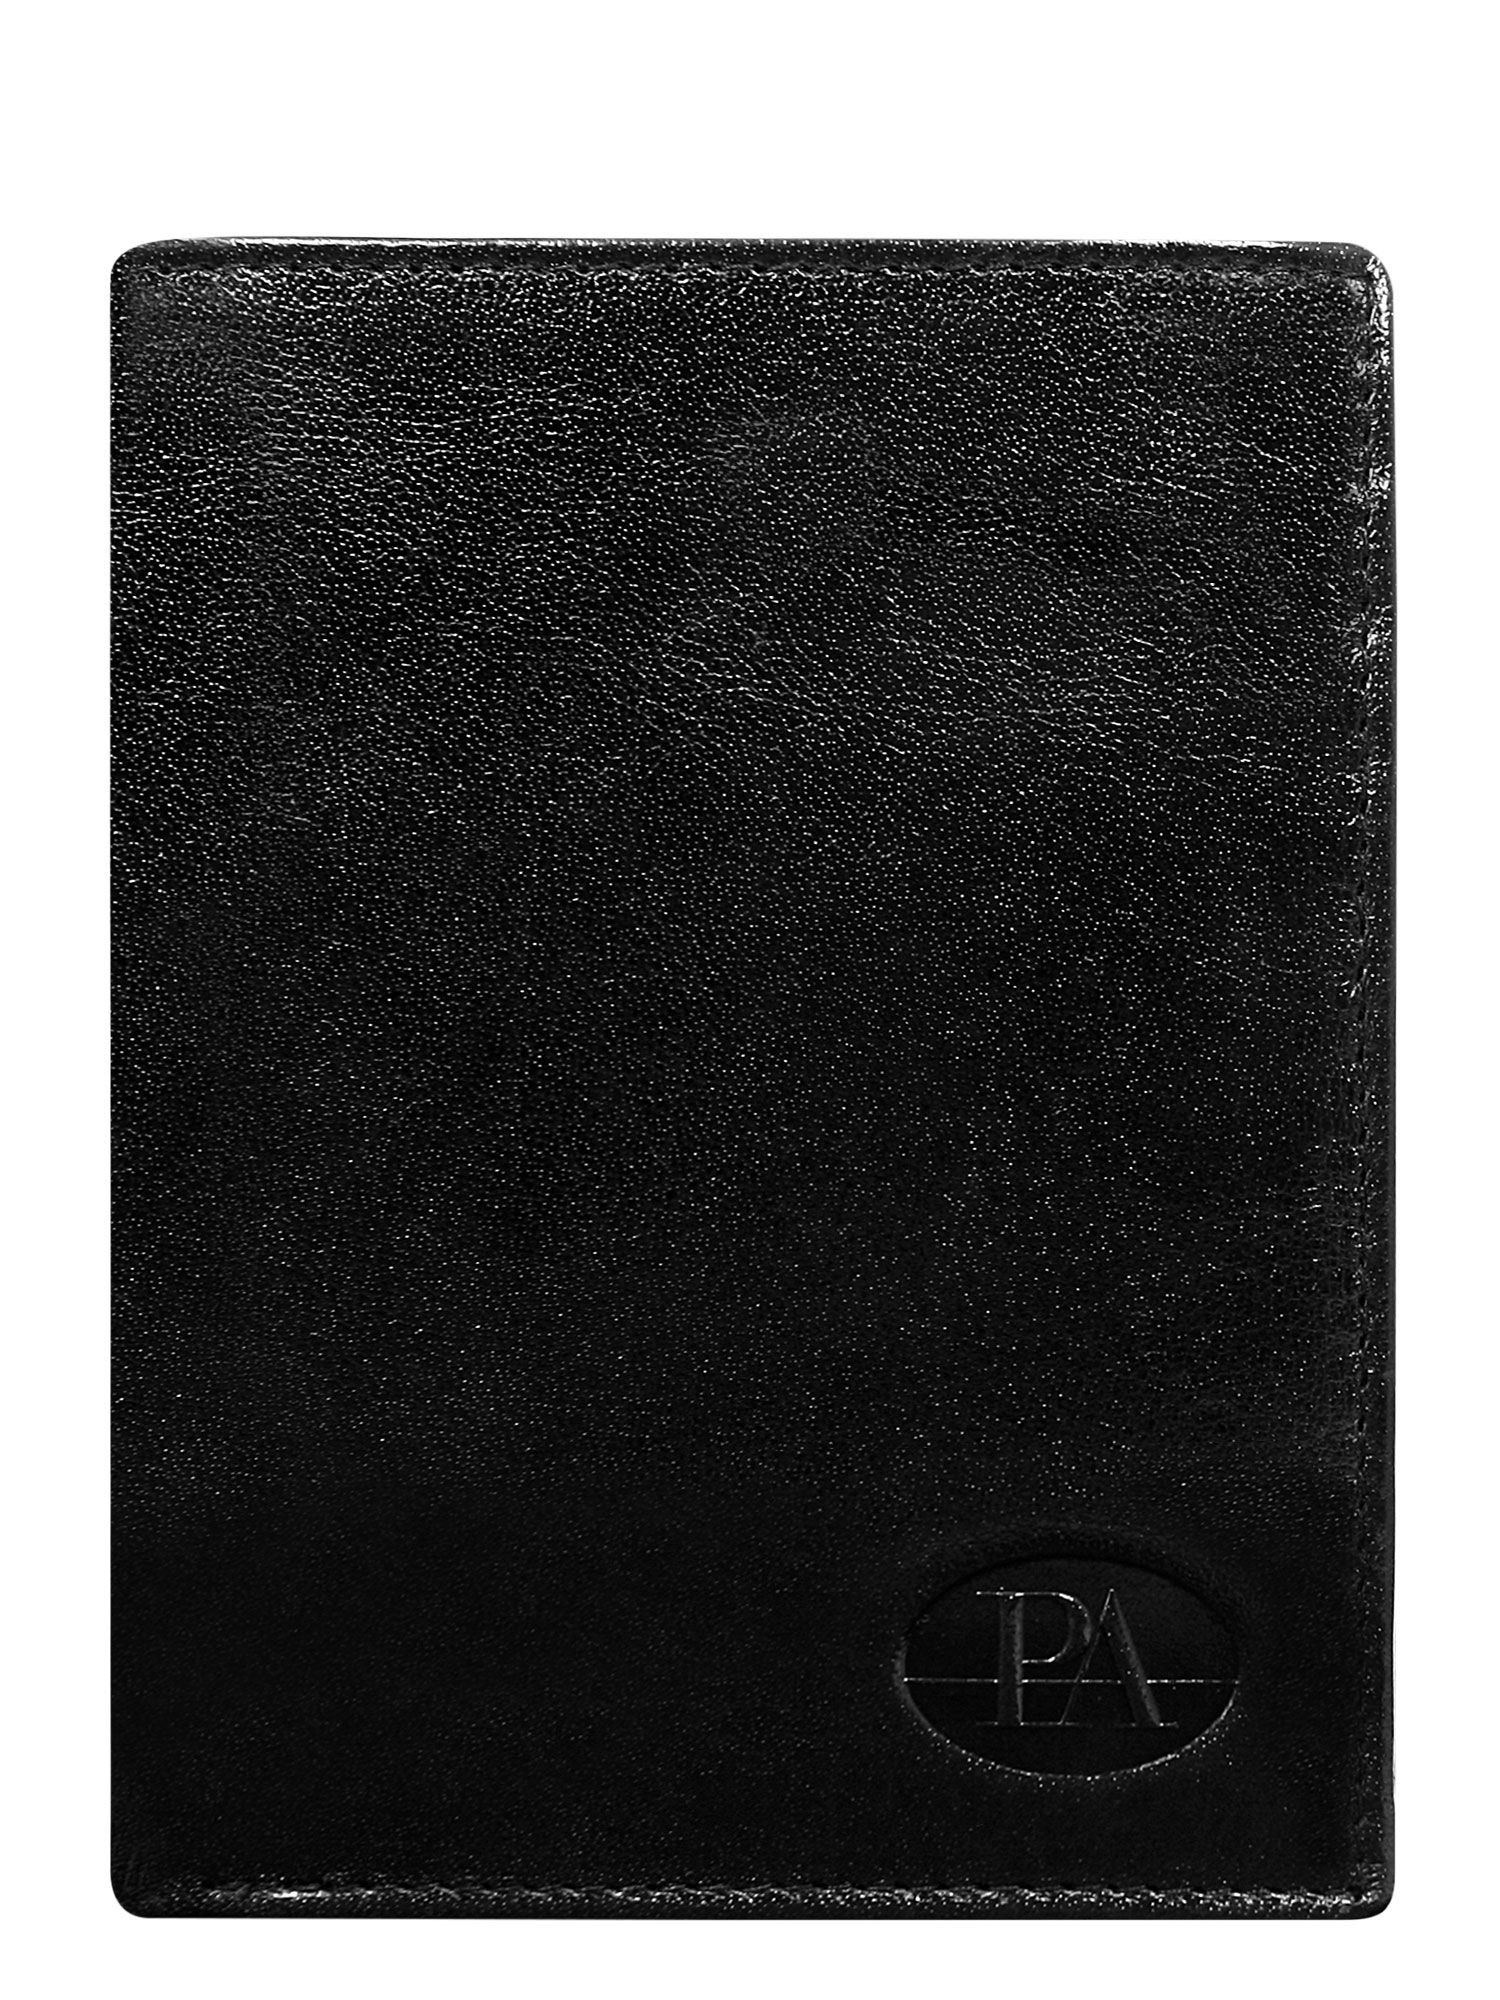 Peněženka CE PR PW 007 BTU.32 černá jedna velikost